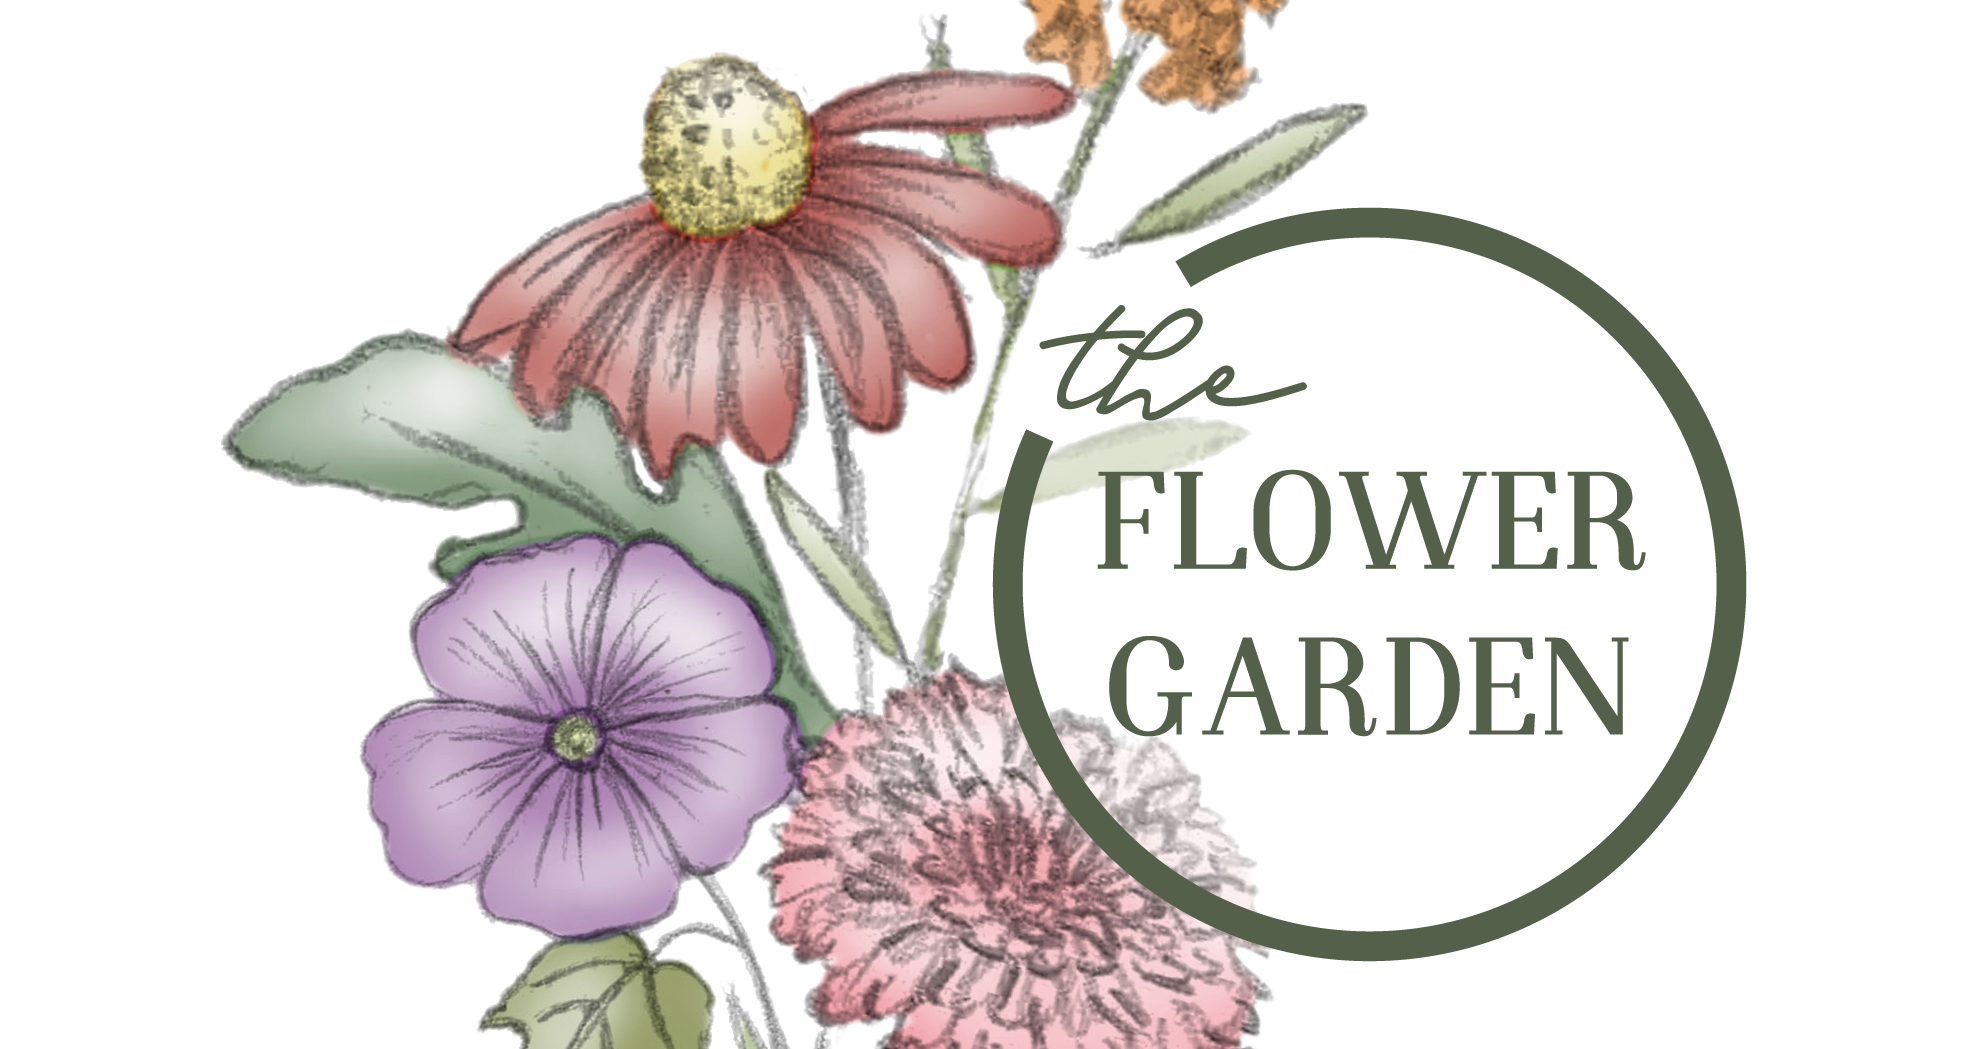 The Flowergarden